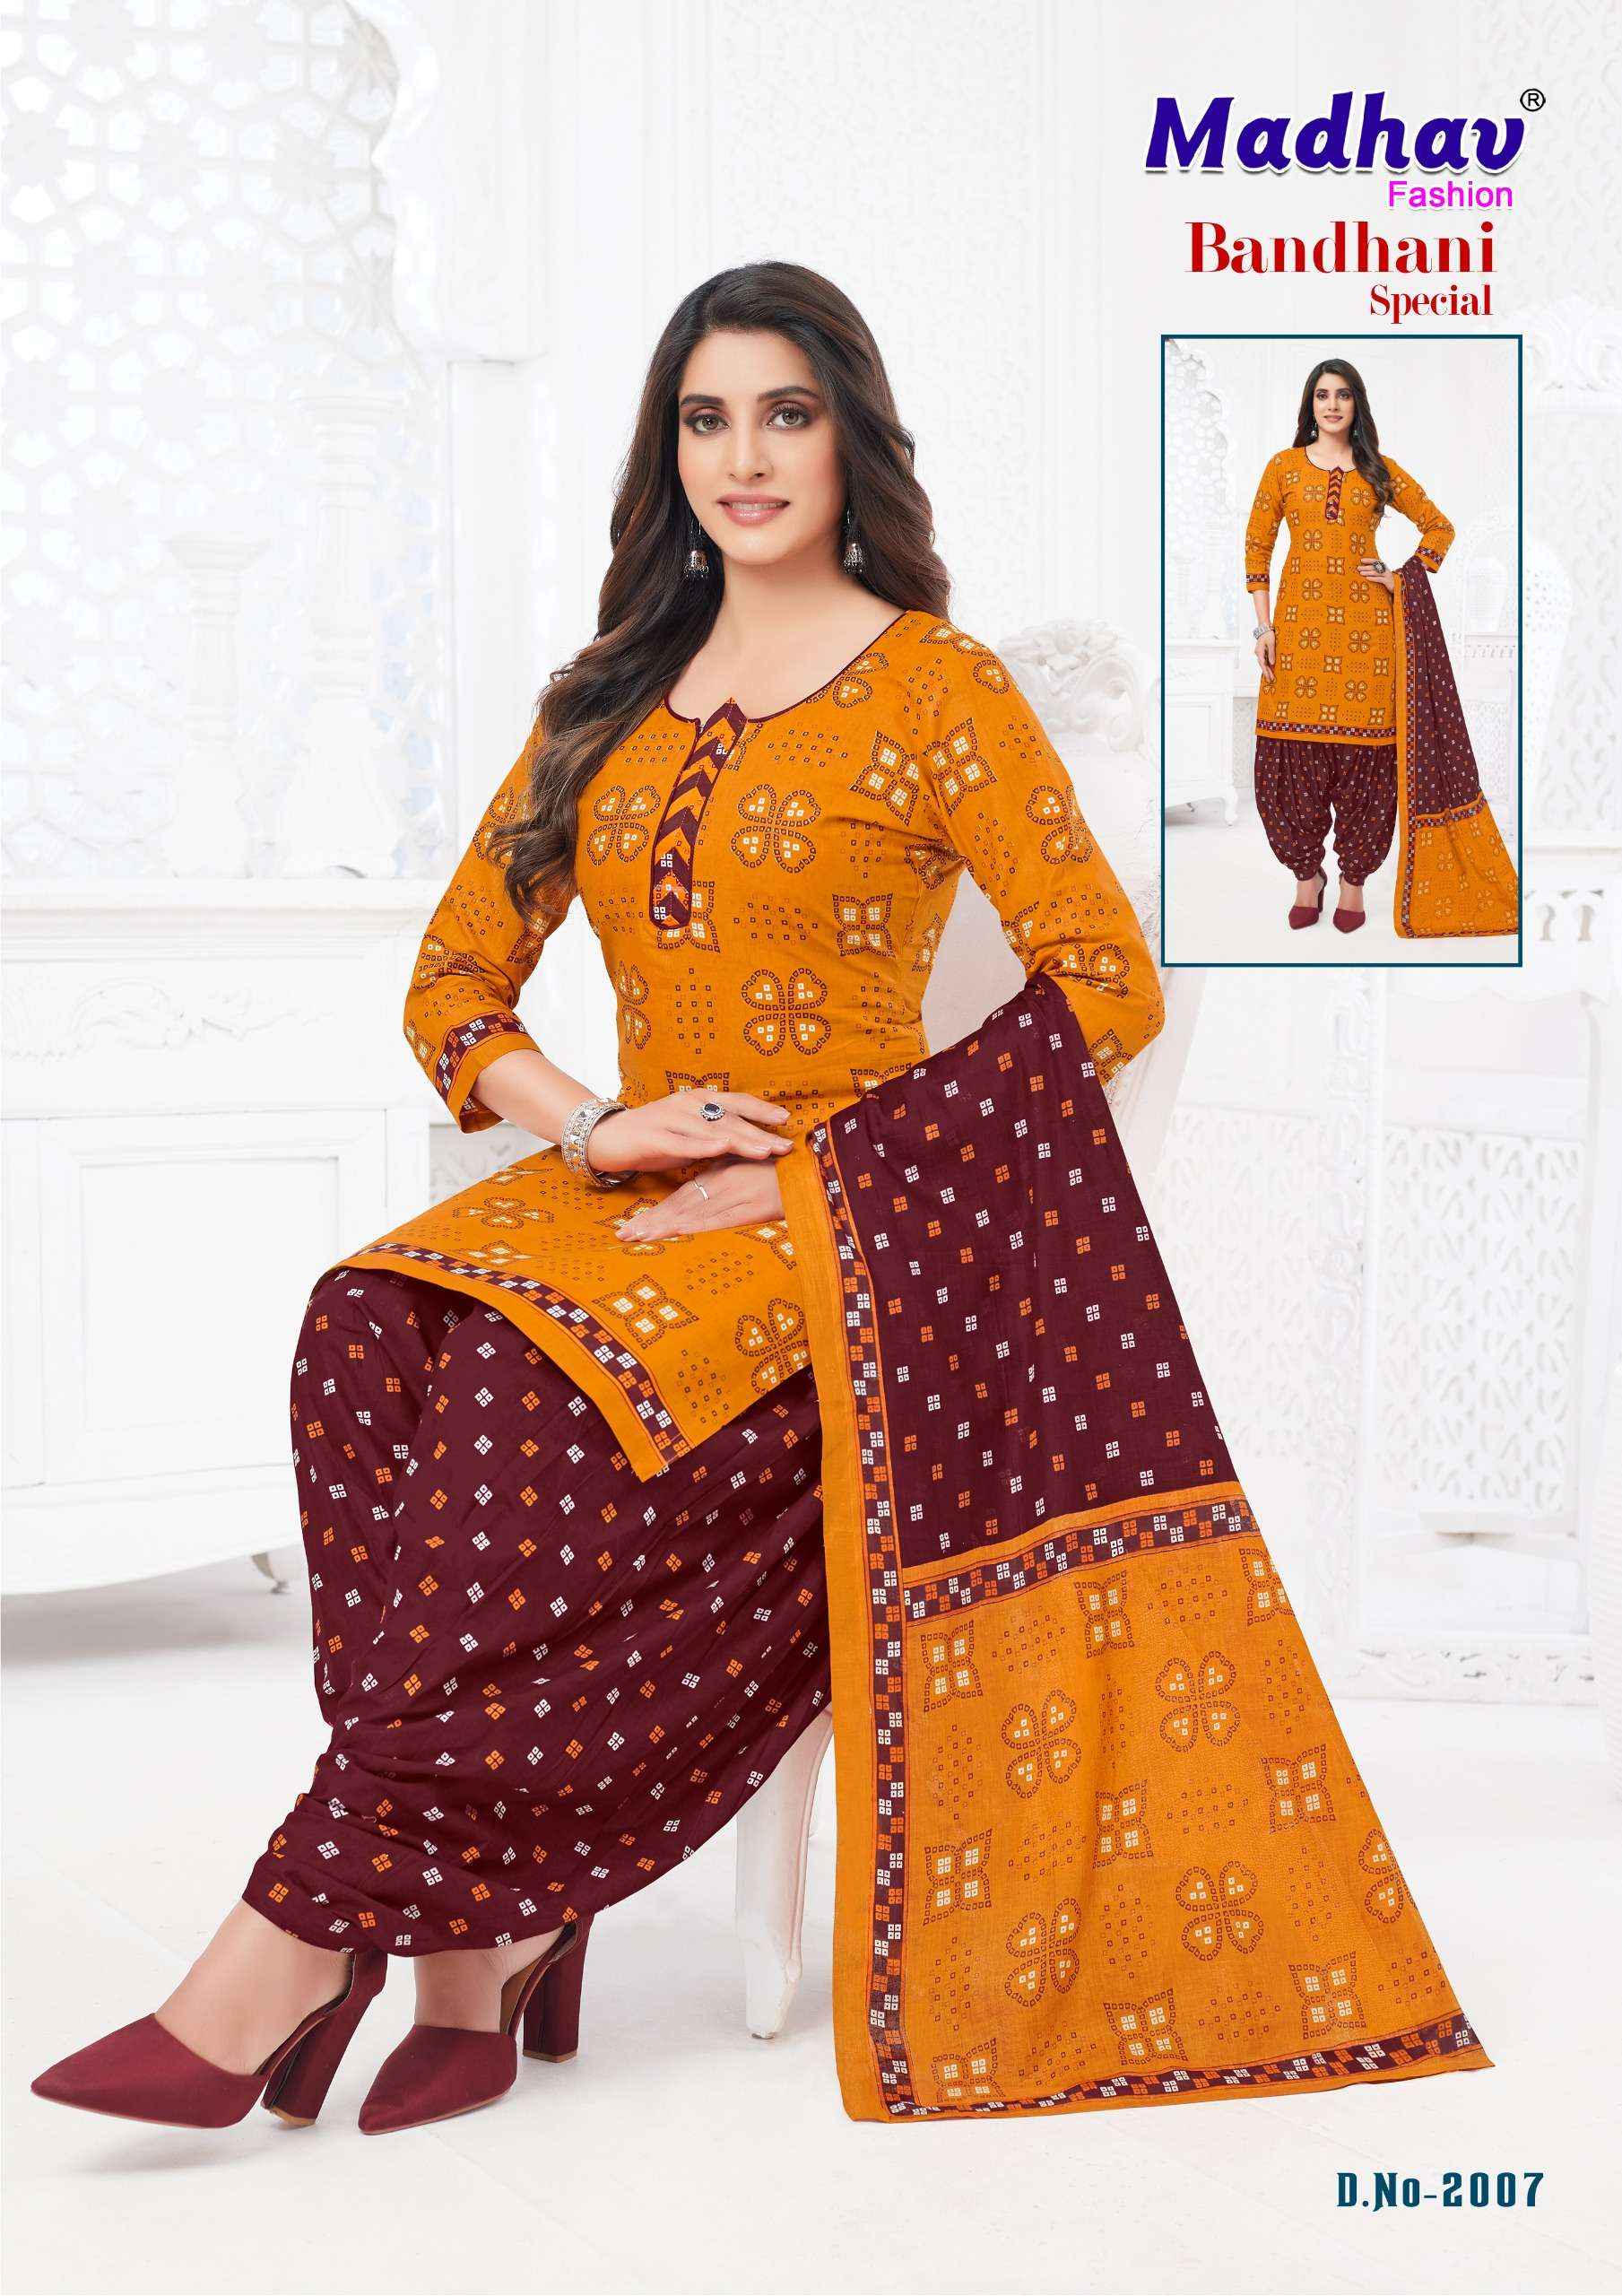 Madhav Fashion Bandhani Special Vol 2 Cotton Dress Material 10 pcs Catalogue